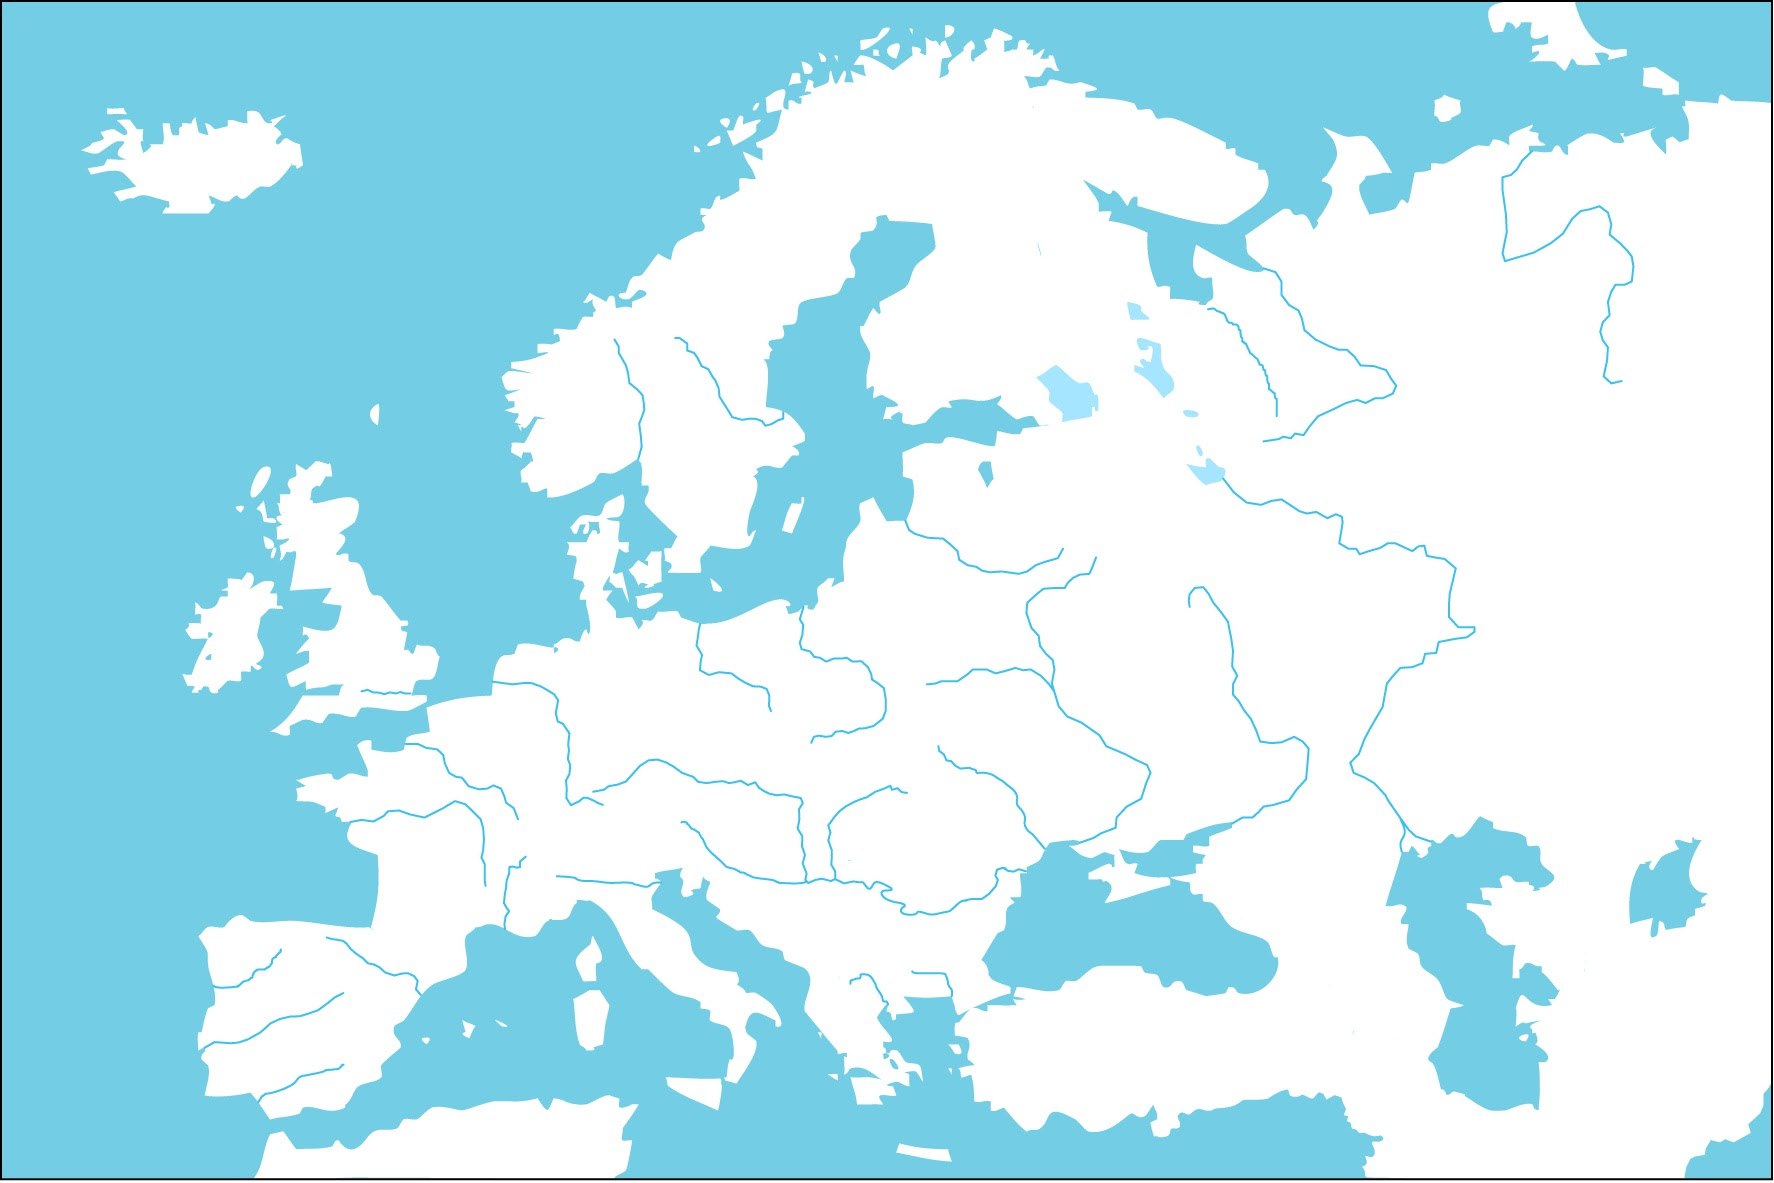 Белая пустая карта. Контурная карта Европы без границ государств. Карта Европы пустая с реками. Контурная карта Европы с границами. Карта Европы с реками и границами.